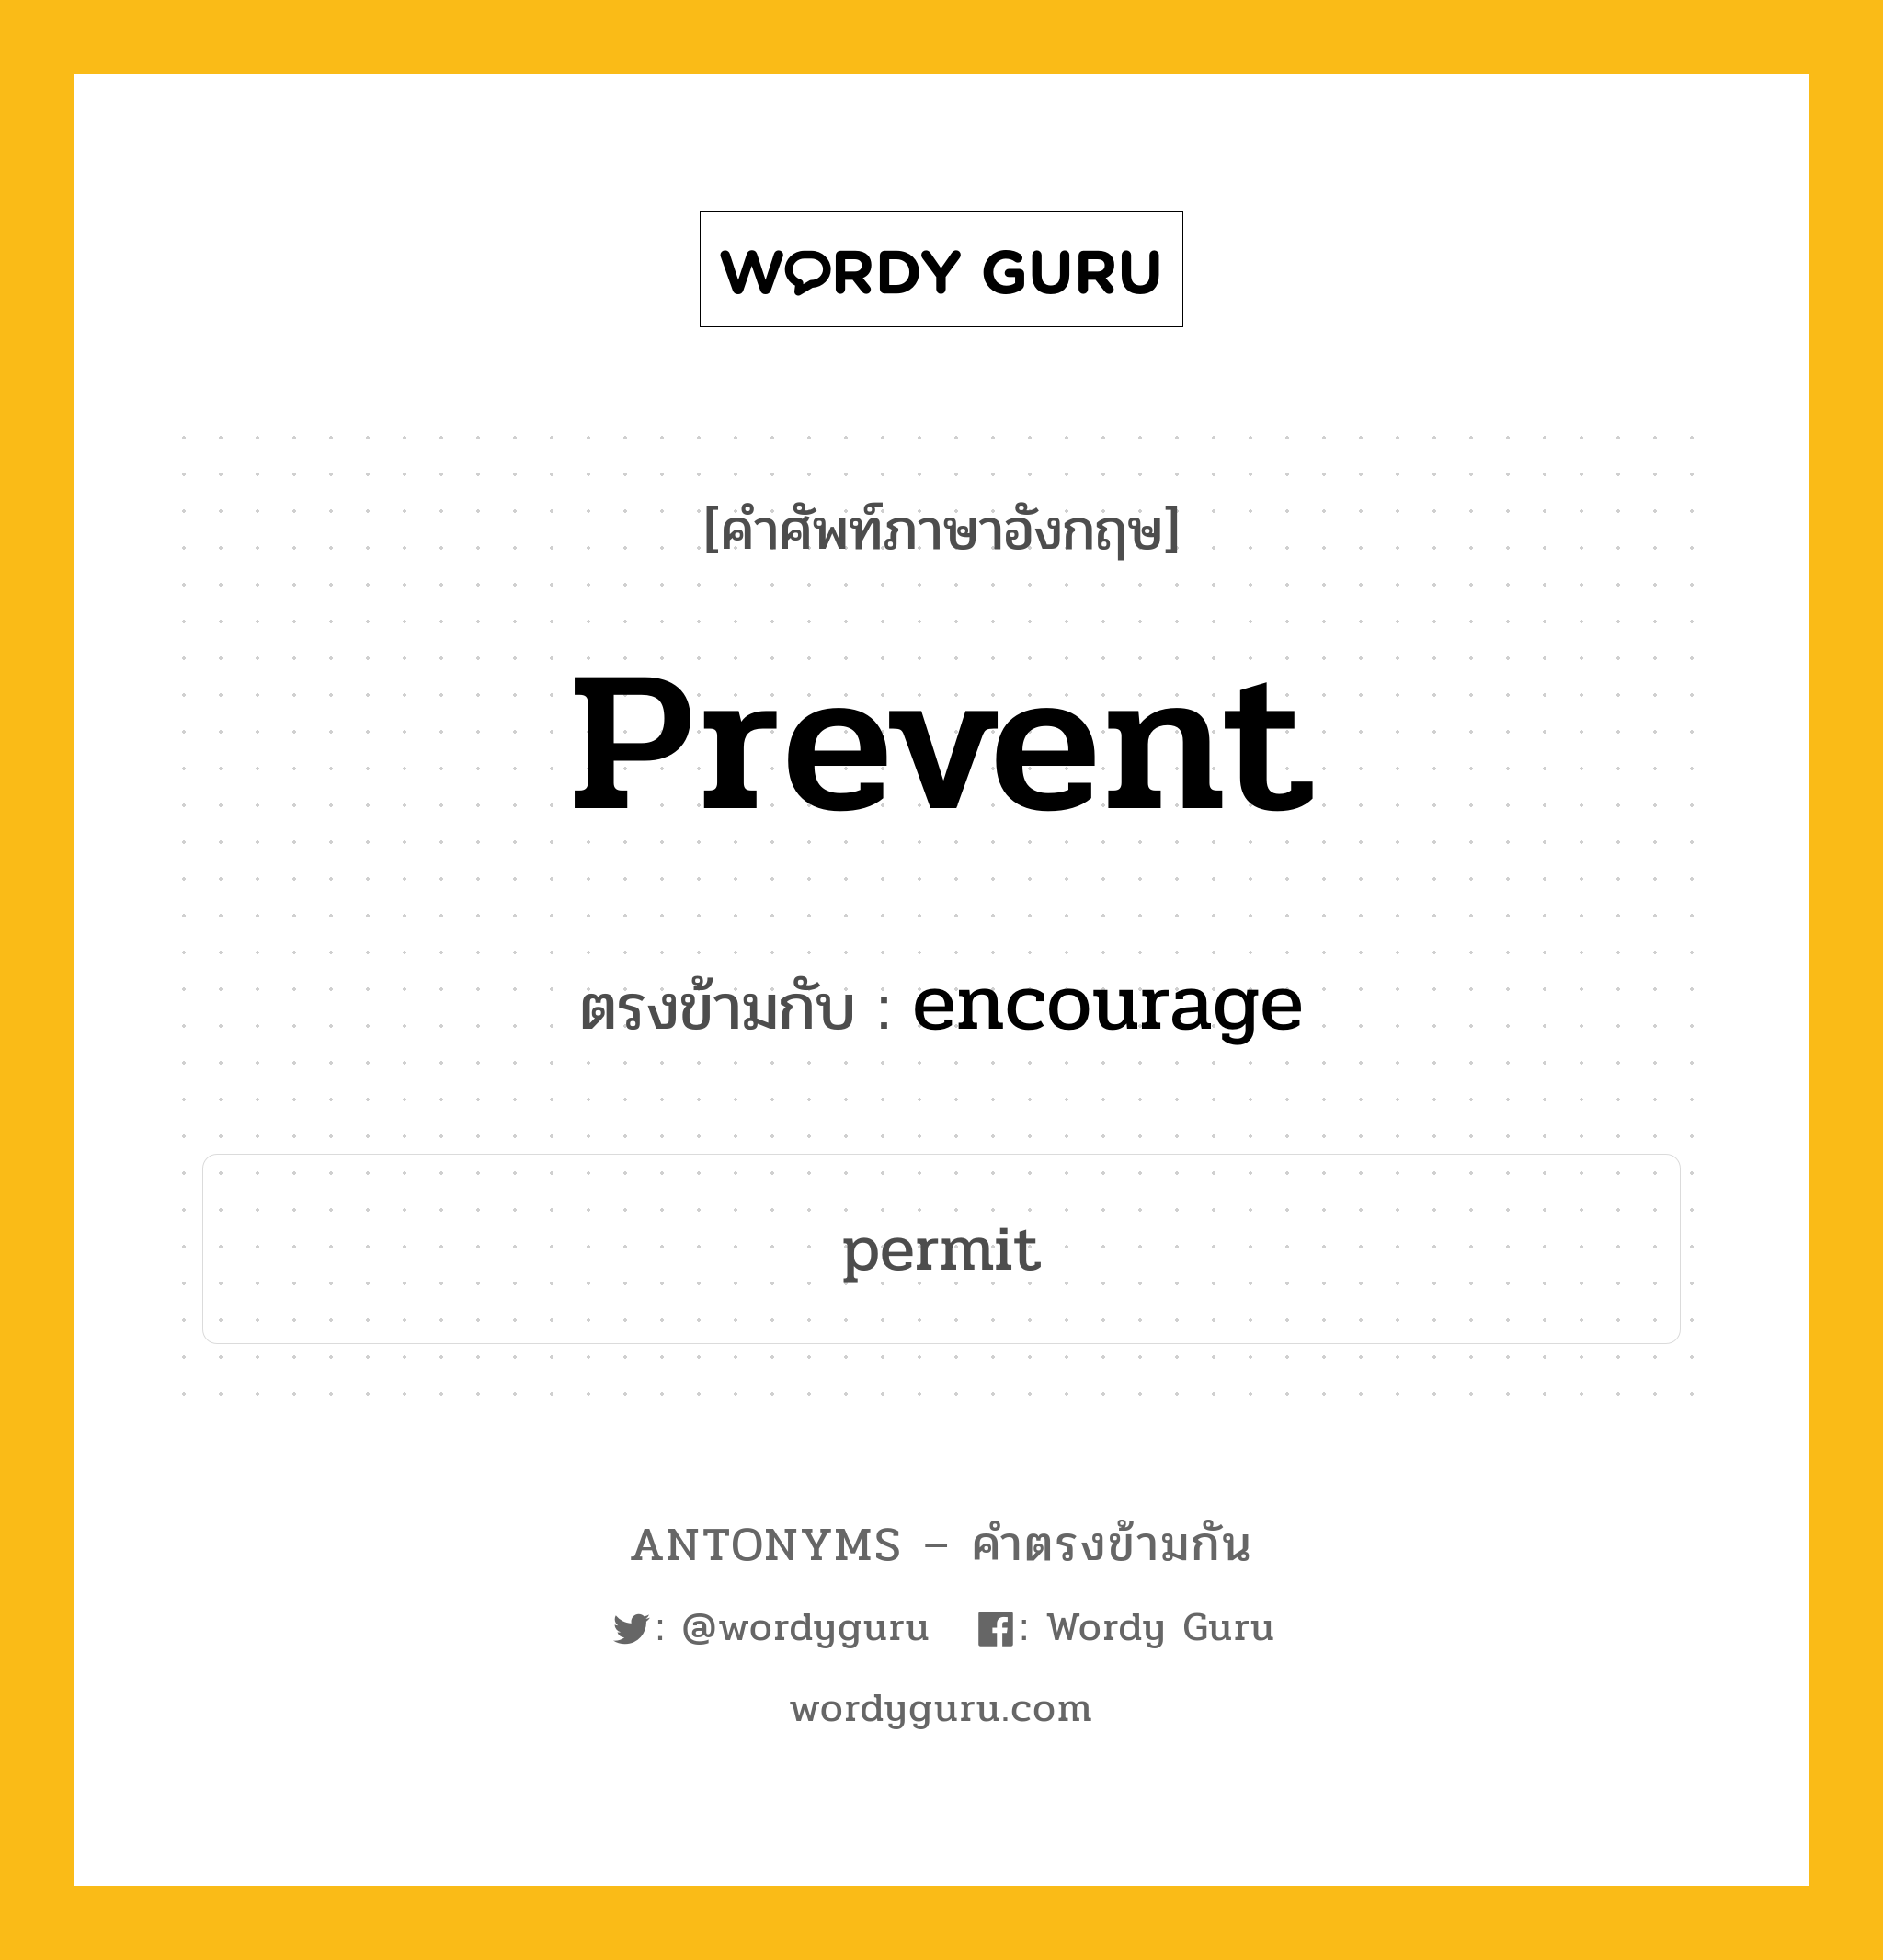 prevent เป็นคำตรงข้ามกับคำไหนบ้าง?, คำศัพท์ภาษาอังกฤษ prevent ตรงข้ามกับ encourage หมวด encourage